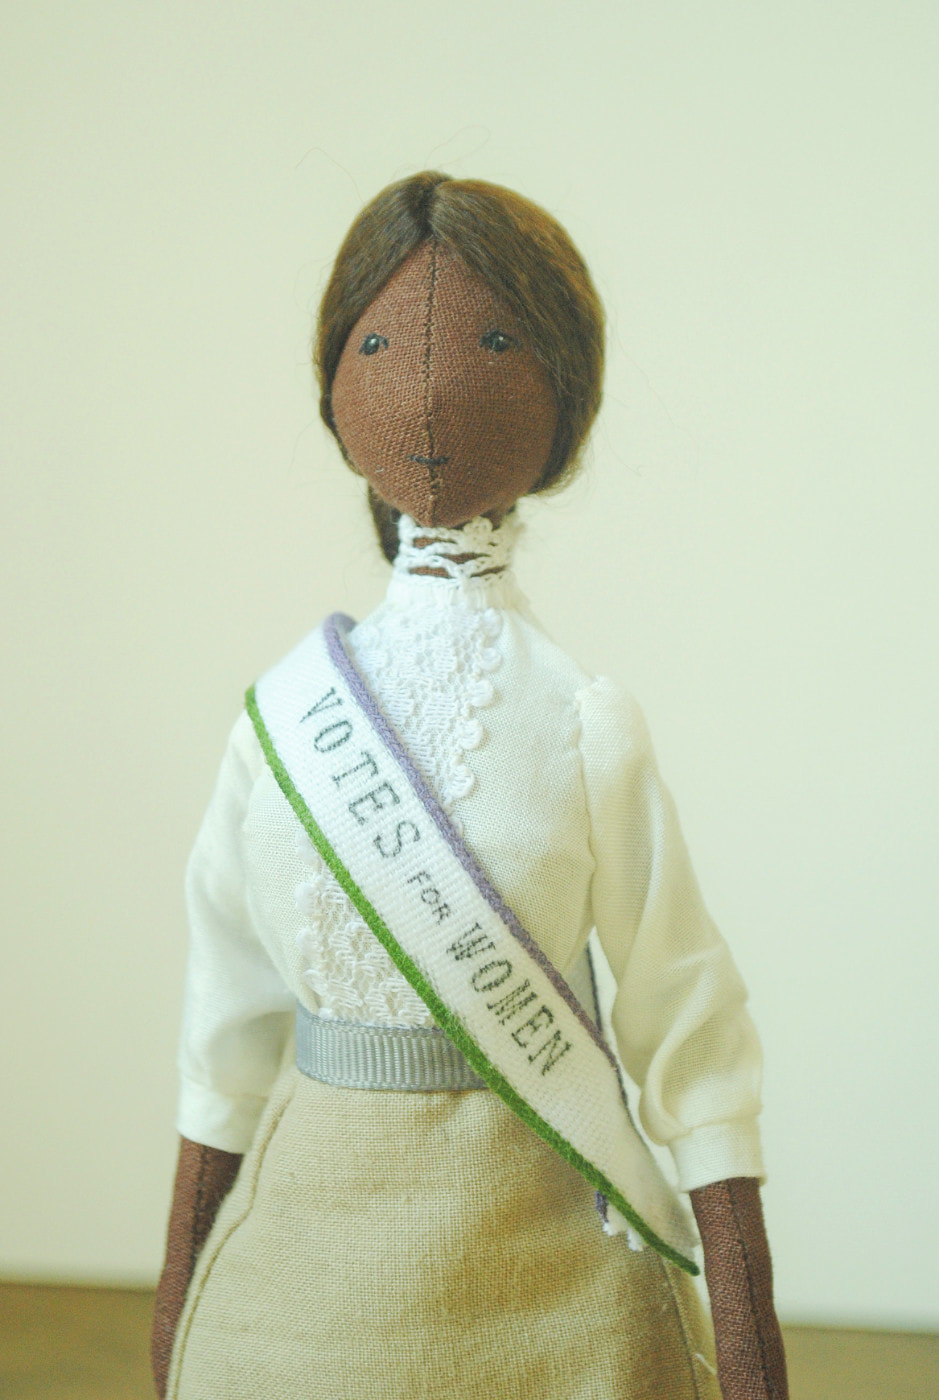 Willowynn Suffragette doll